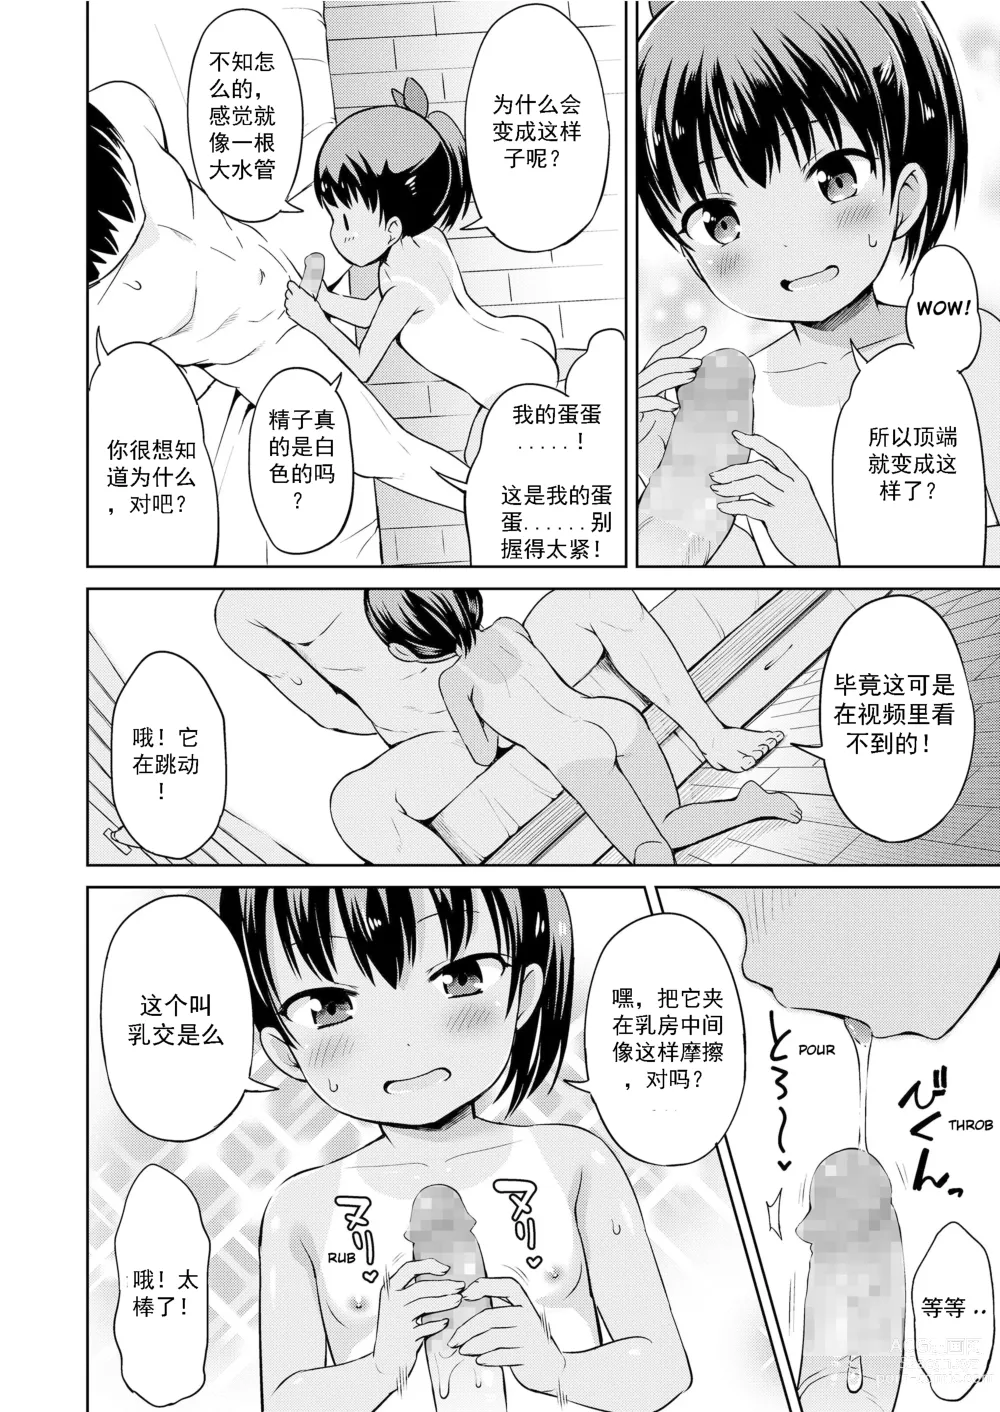 Page 13 of manga 